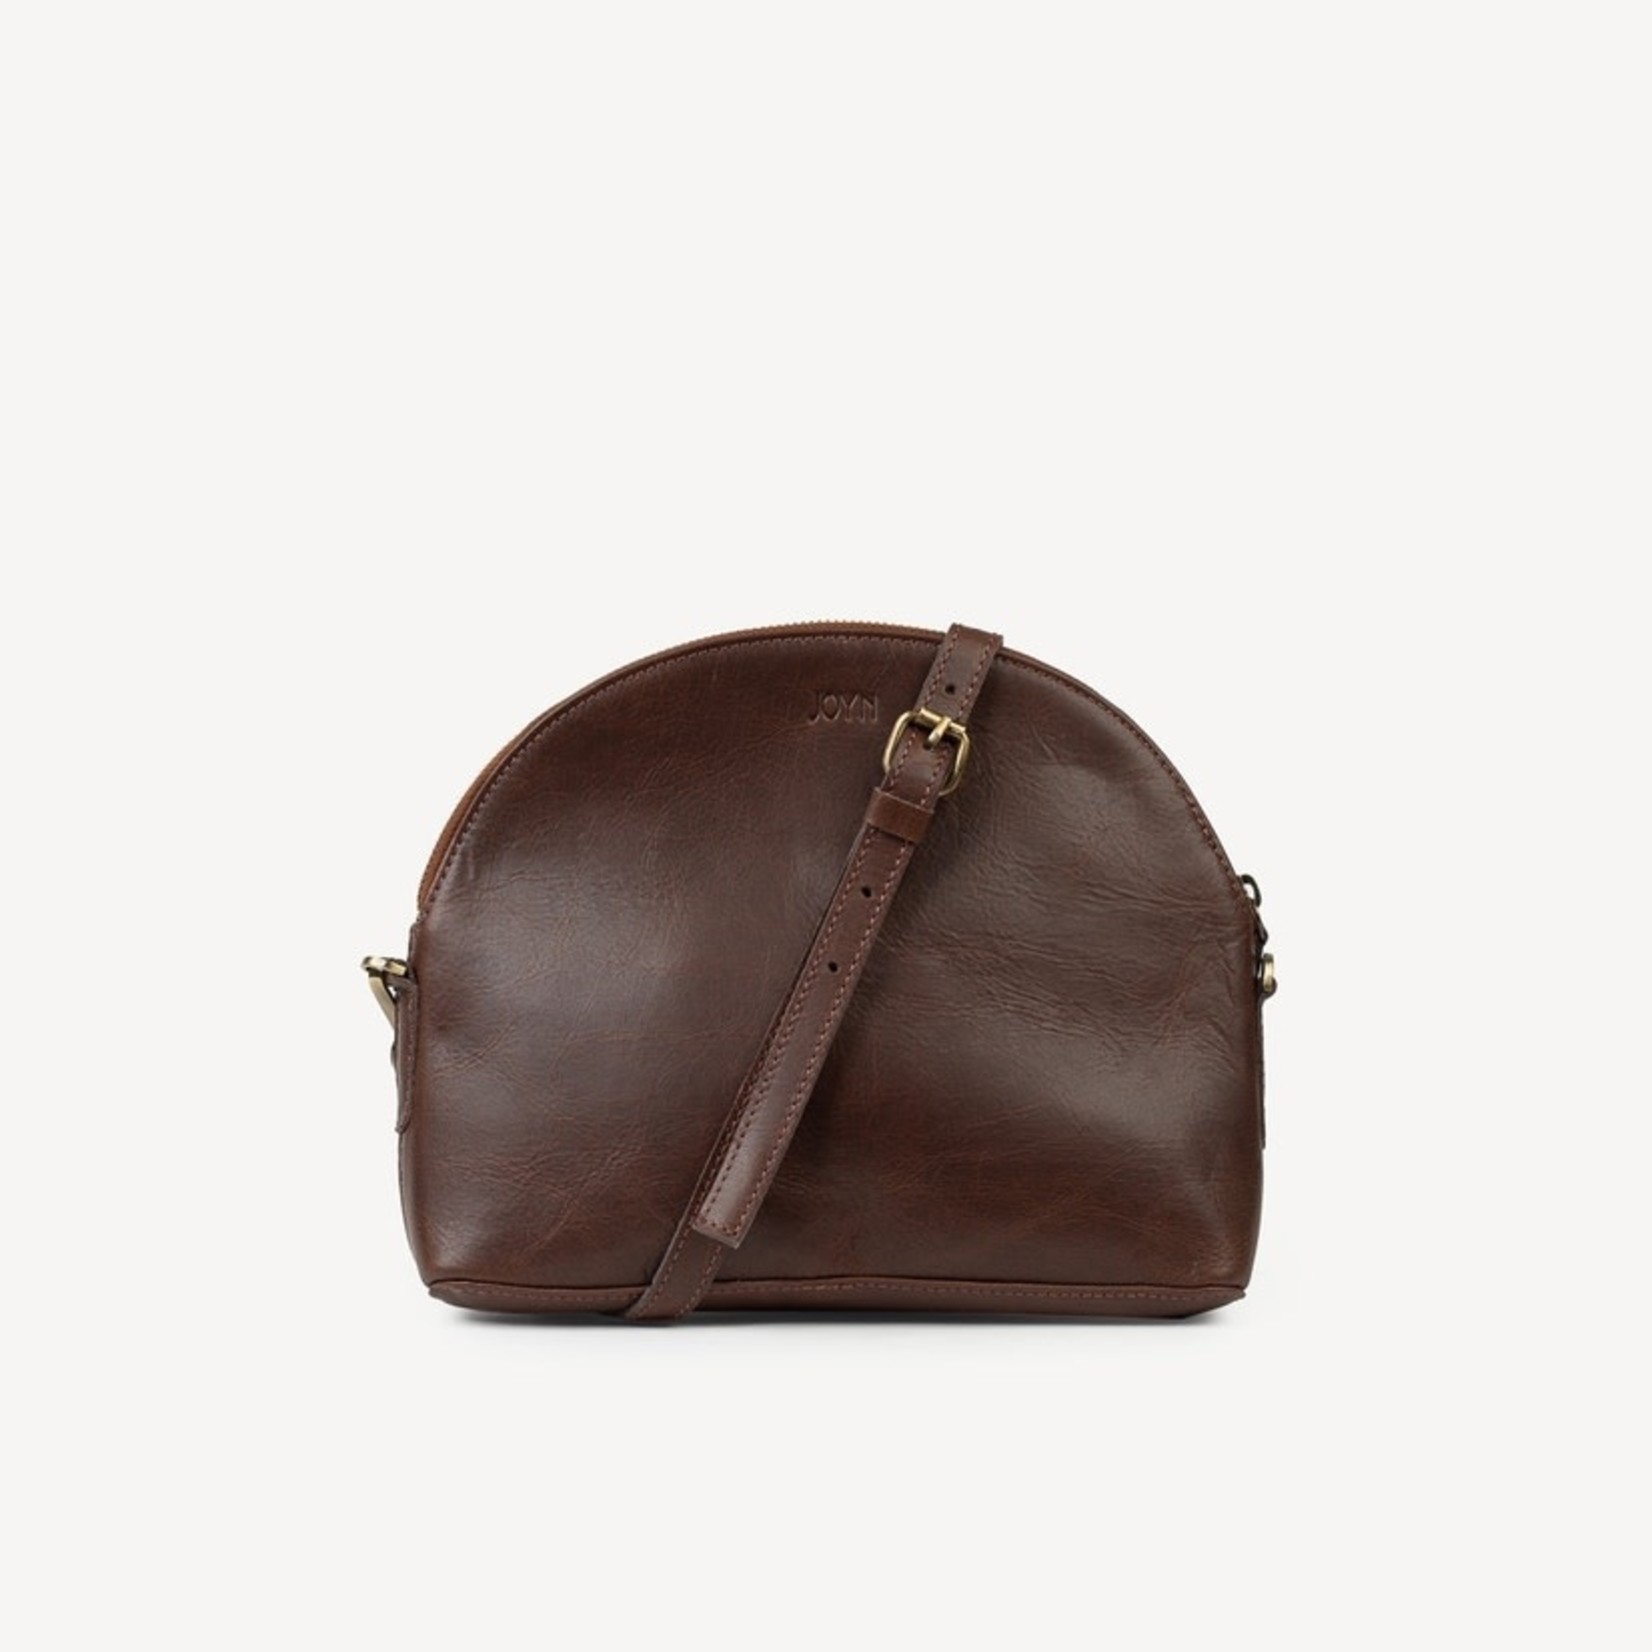 Joyn Small Halfmoon Handbag Brown, India